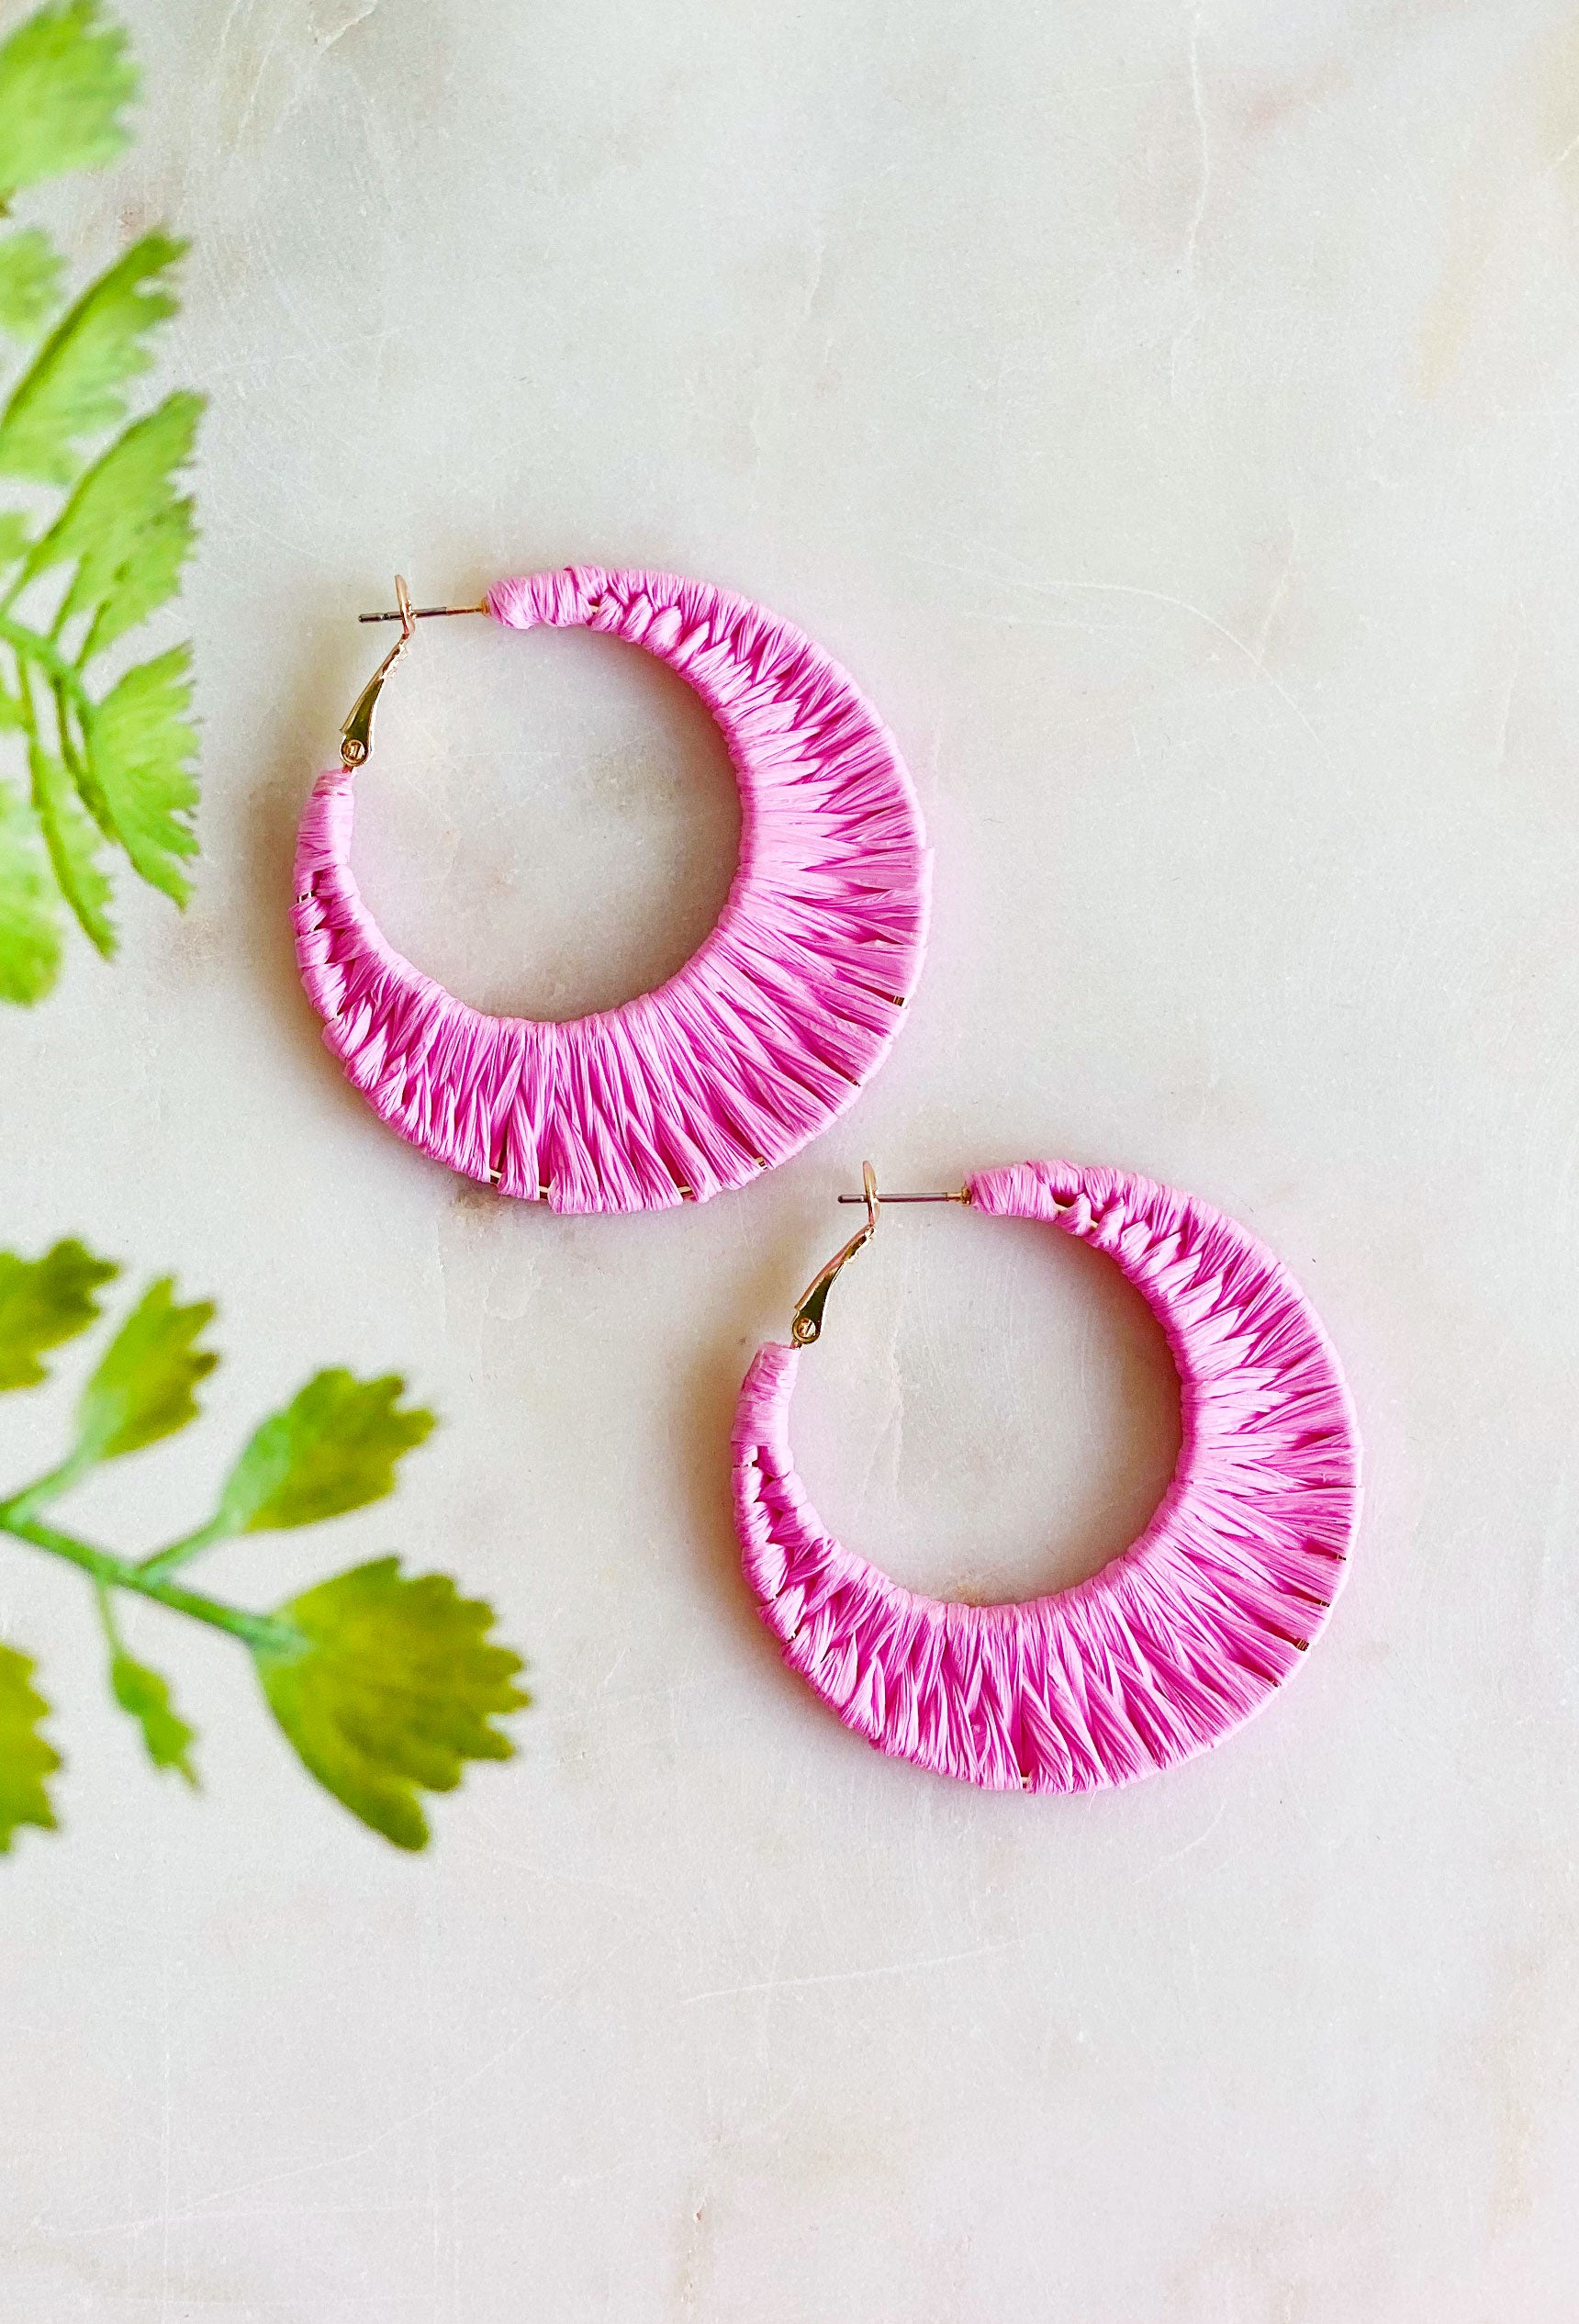 Off The Coast Earrings in Pink, pink raffia hoop